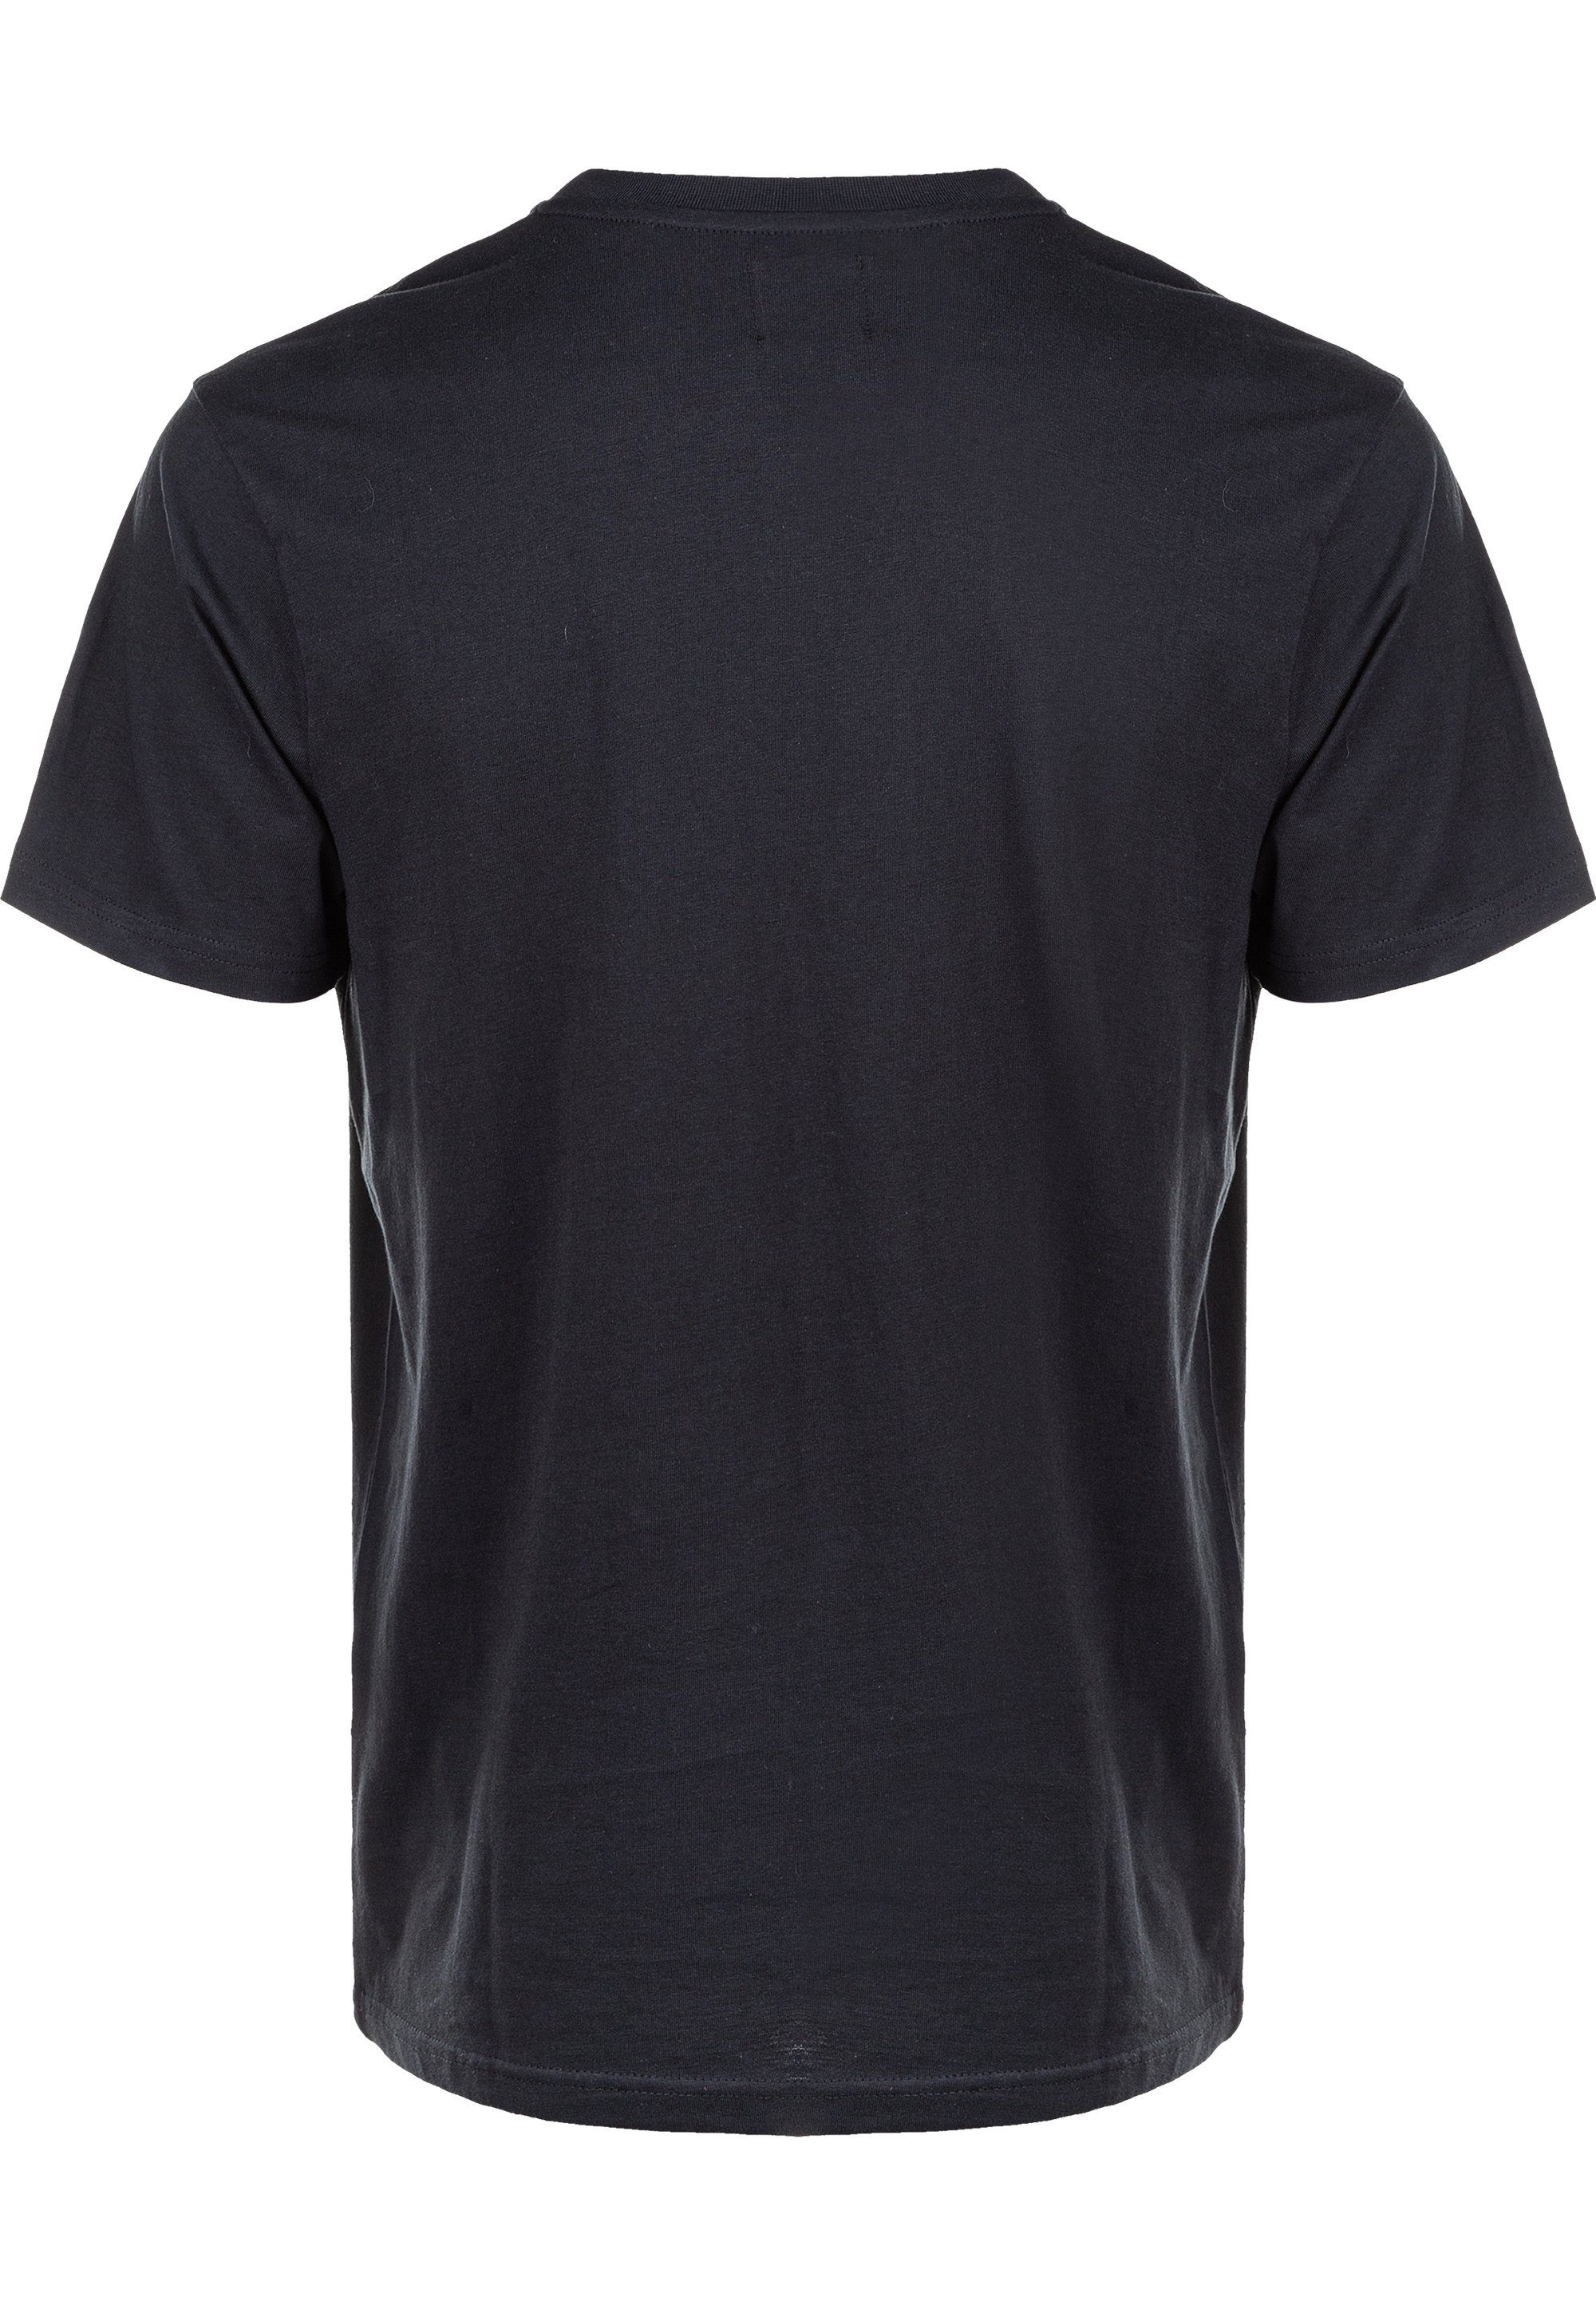 T-Shirt CRUZ reiner schwarz Baumwolle Highmore aus